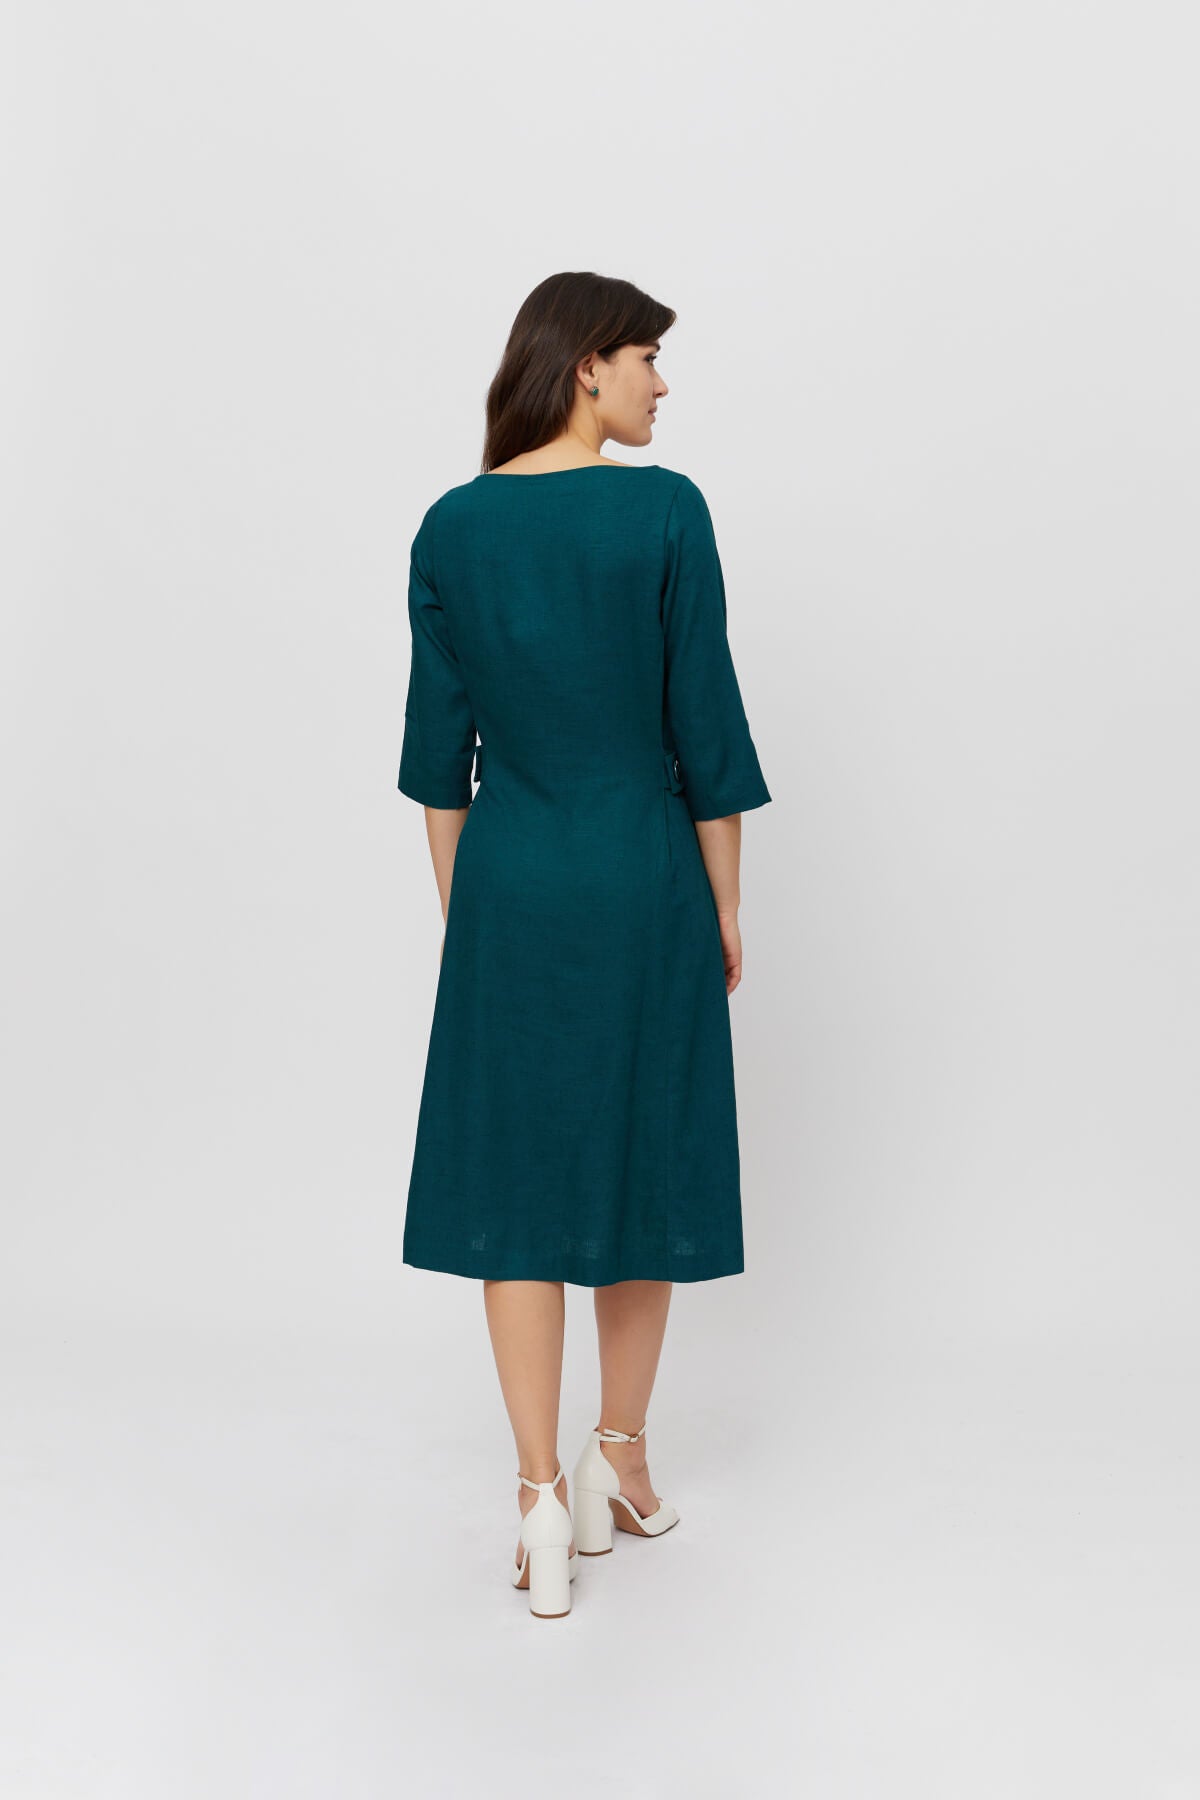 Emilia | Midi A-line Dress in Green